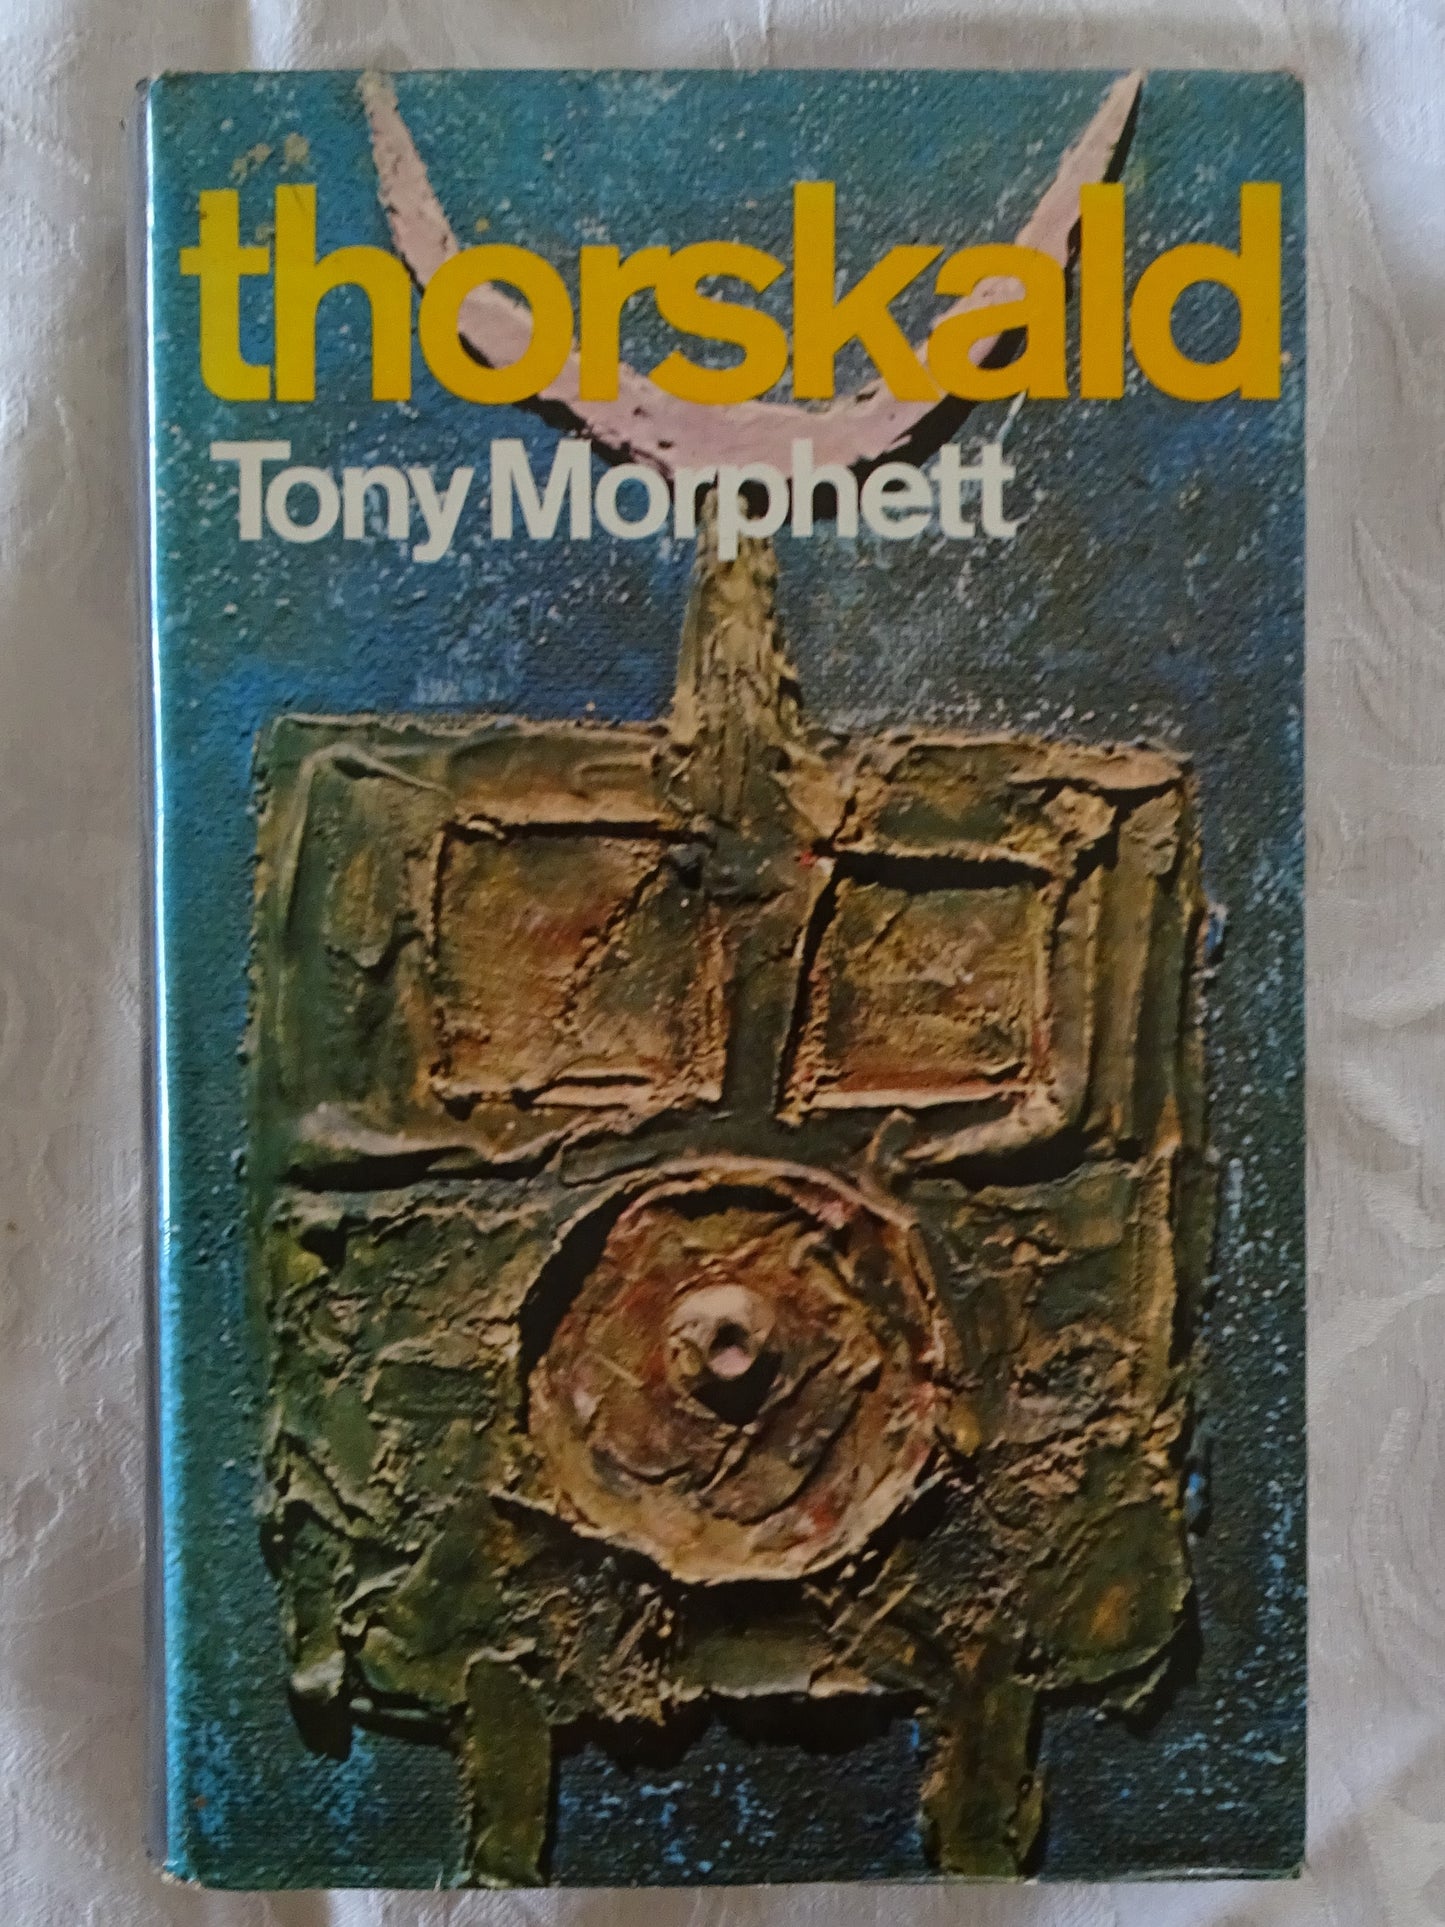 Thorskald by Tony Morphett